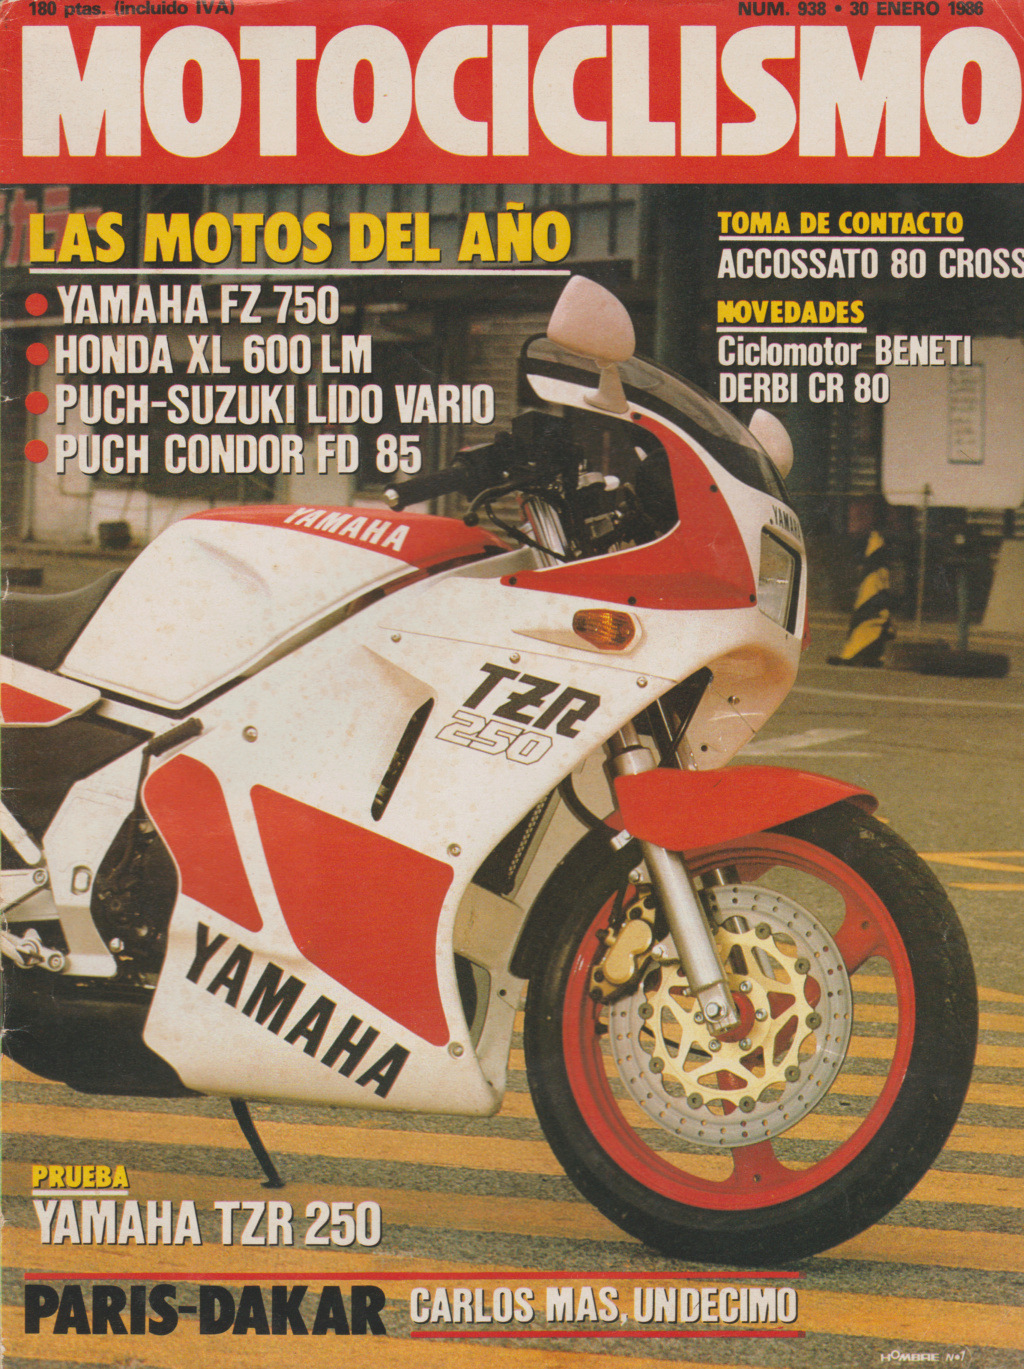 Motociclismo Nº 938 - Derbi CR 80 1986 Escze119